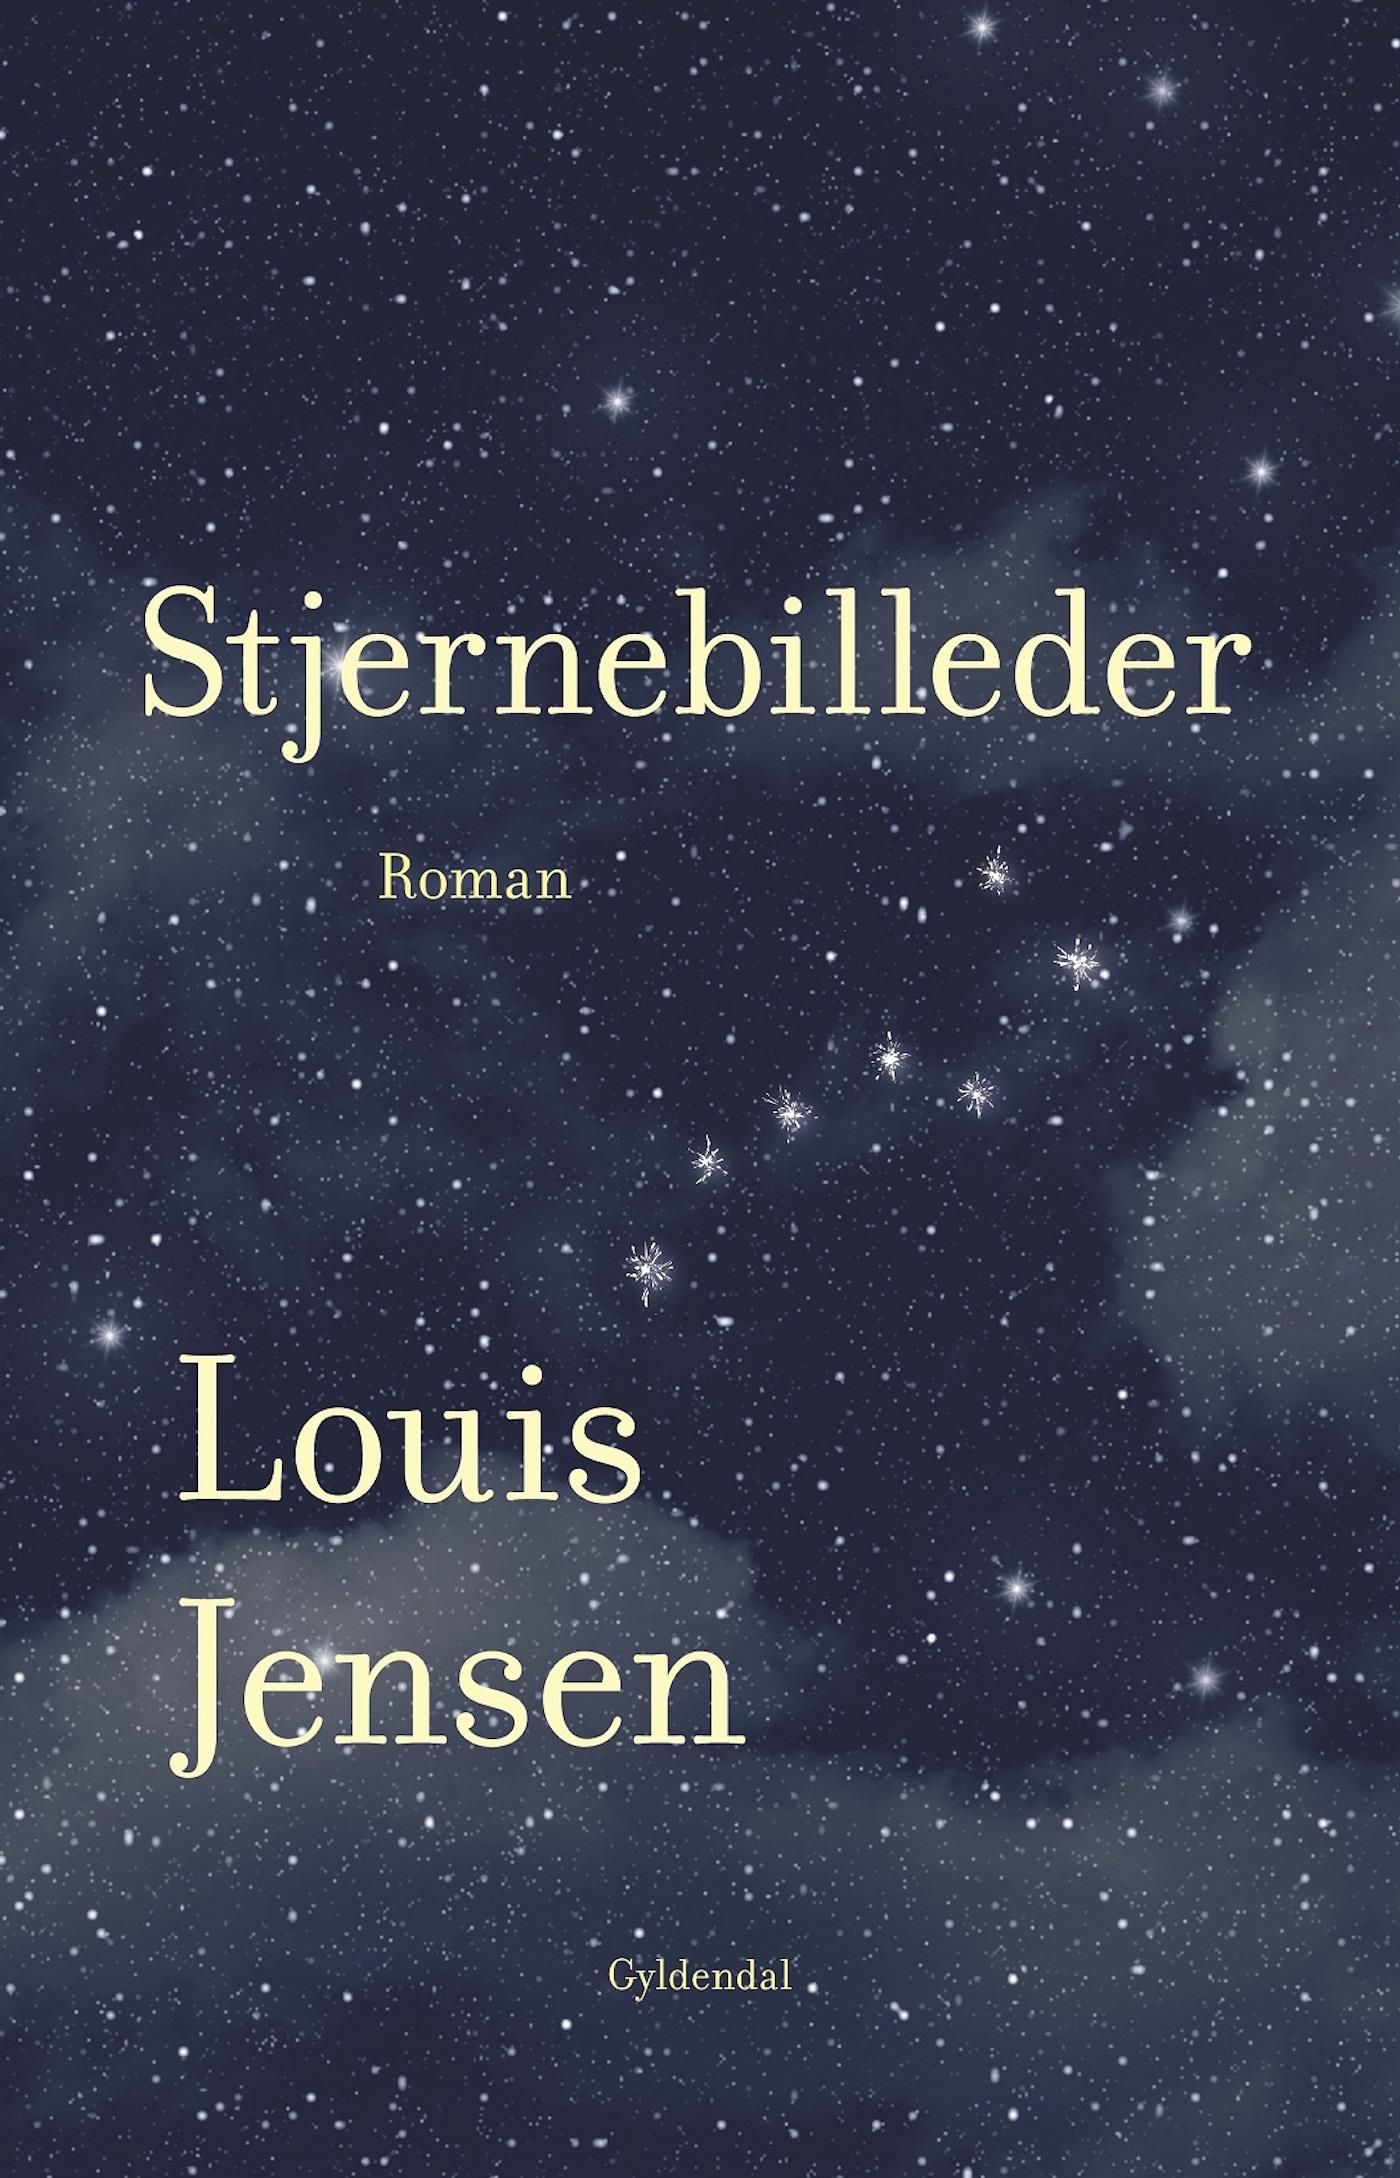 Stjernebilleder, e-bok av Louis Jensen